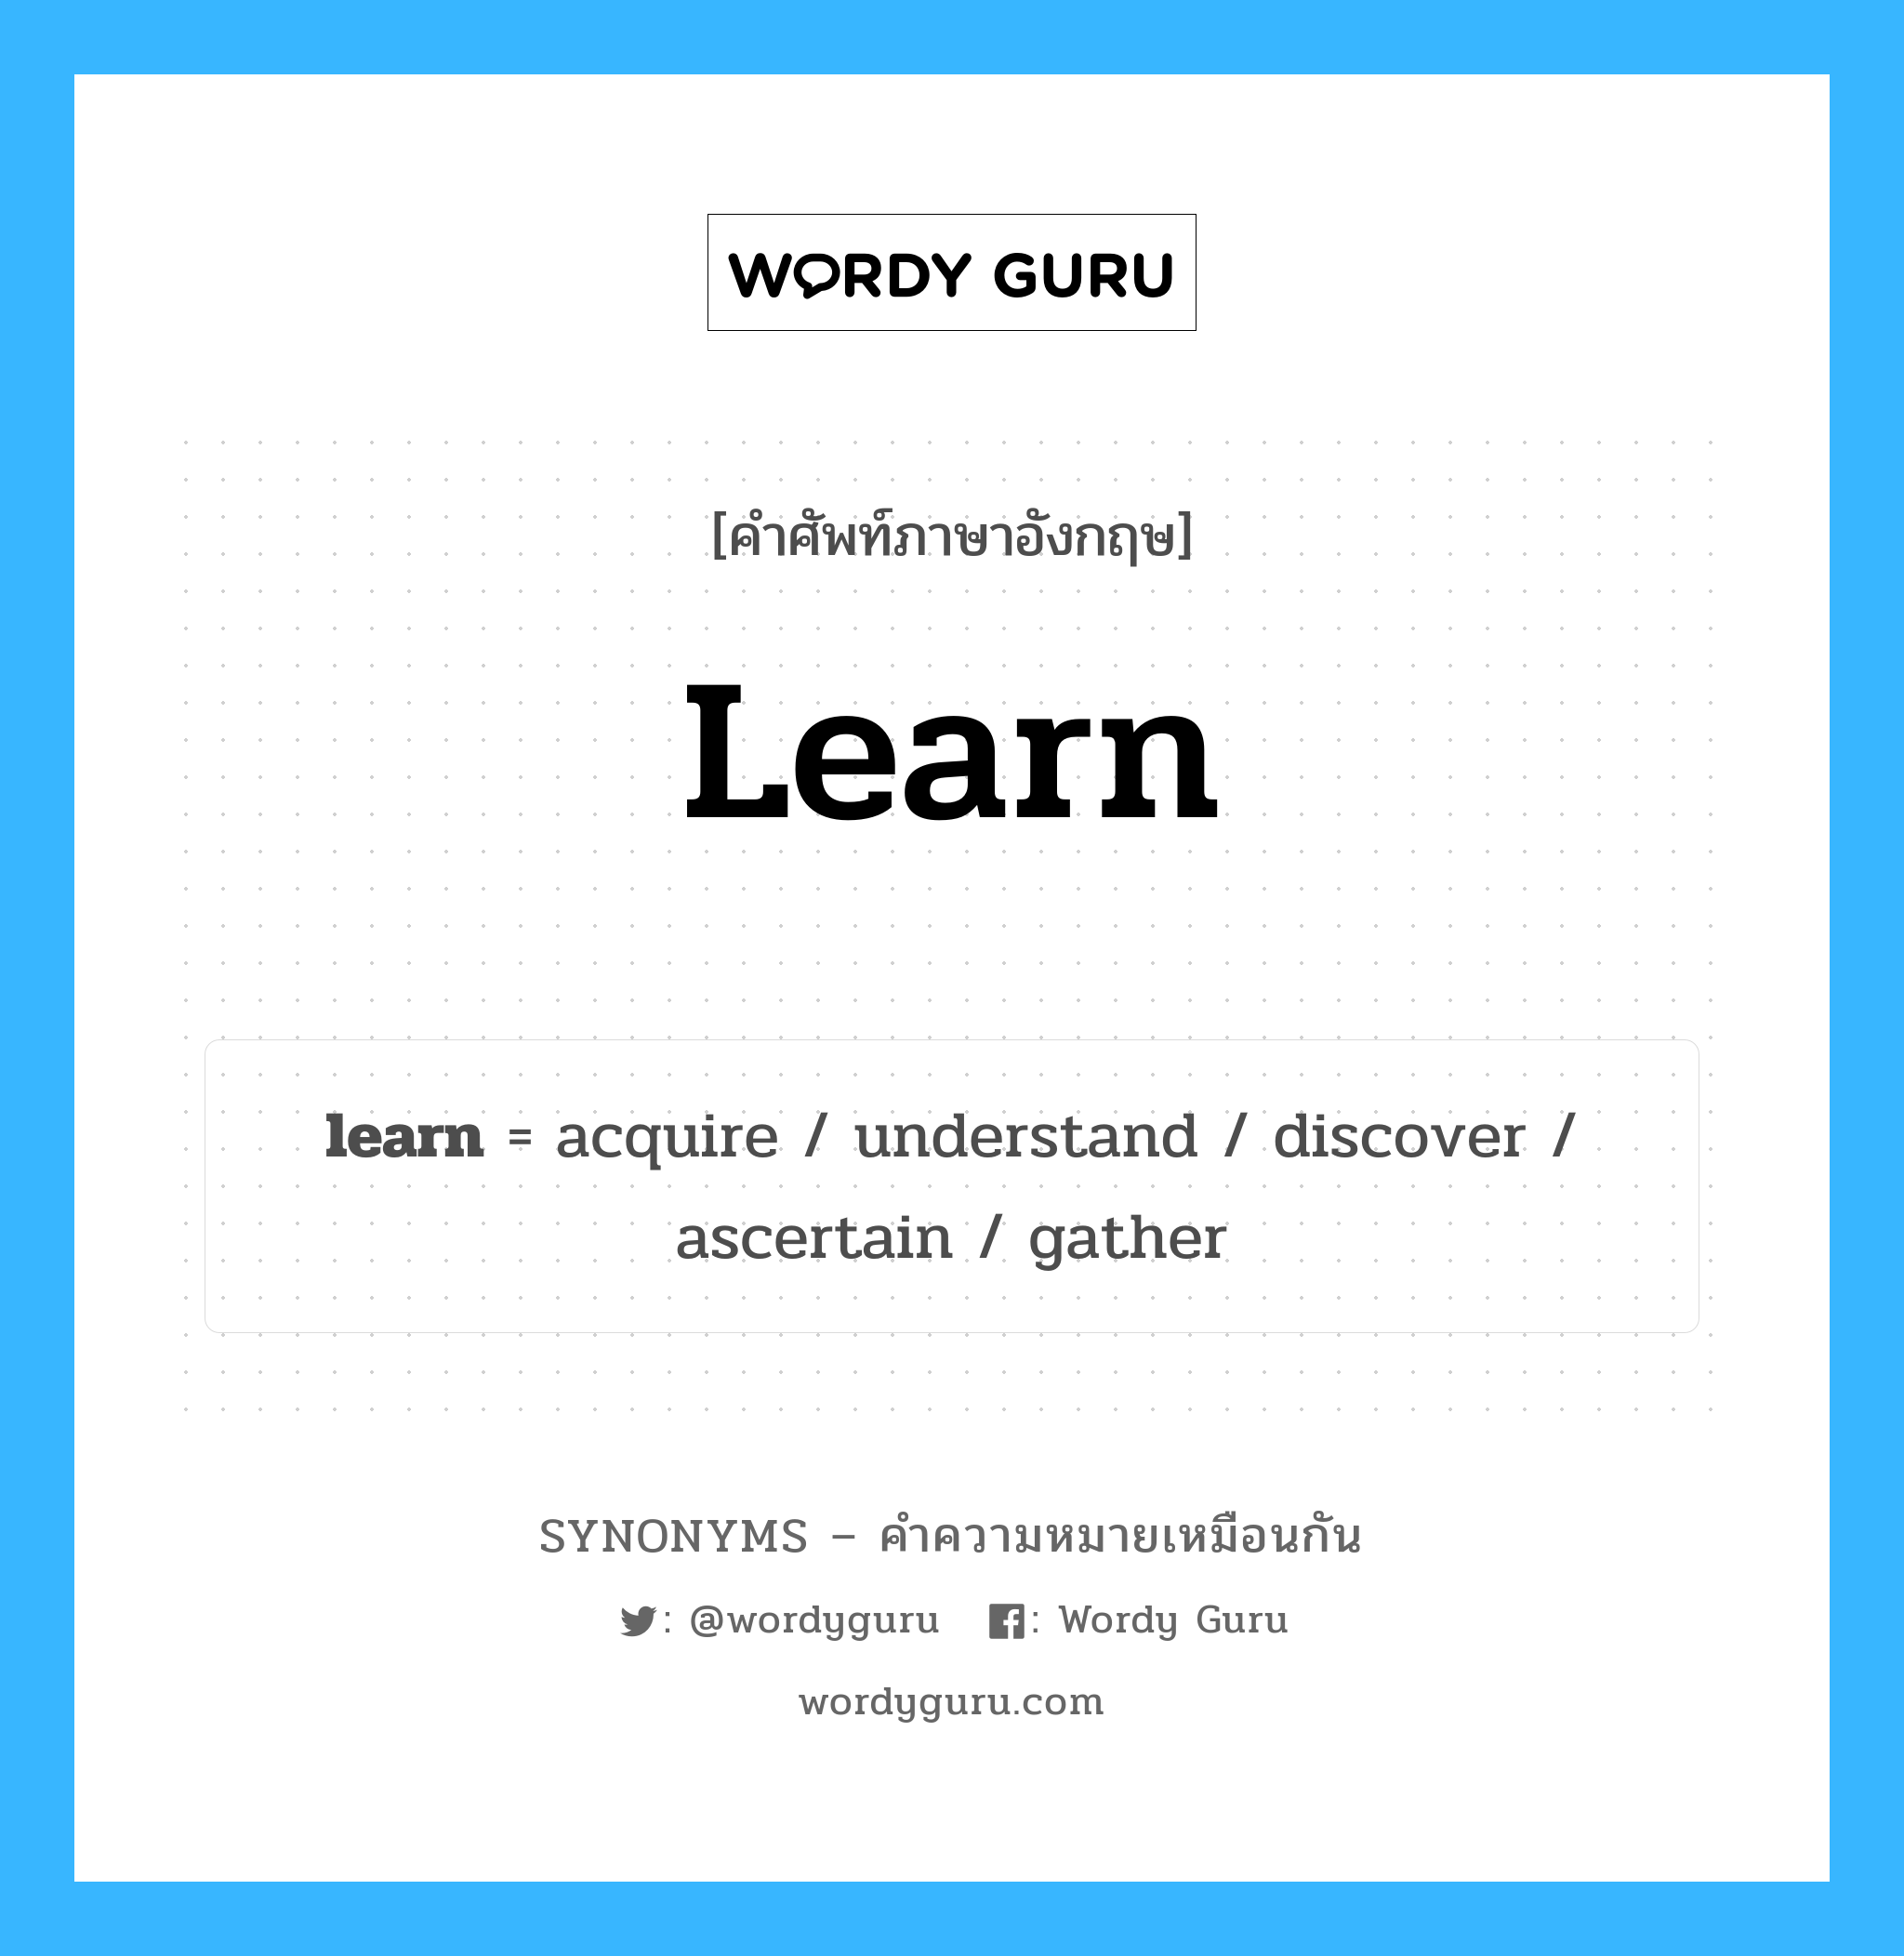 discover เป็นหนึ่งใน learn และมีคำอื่น ๆ อีกดังนี้, คำศัพท์ภาษาอังกฤษ discover ความหมายคล้ายกันกับ learn แปลว่า ค้นพบ หมวด learn